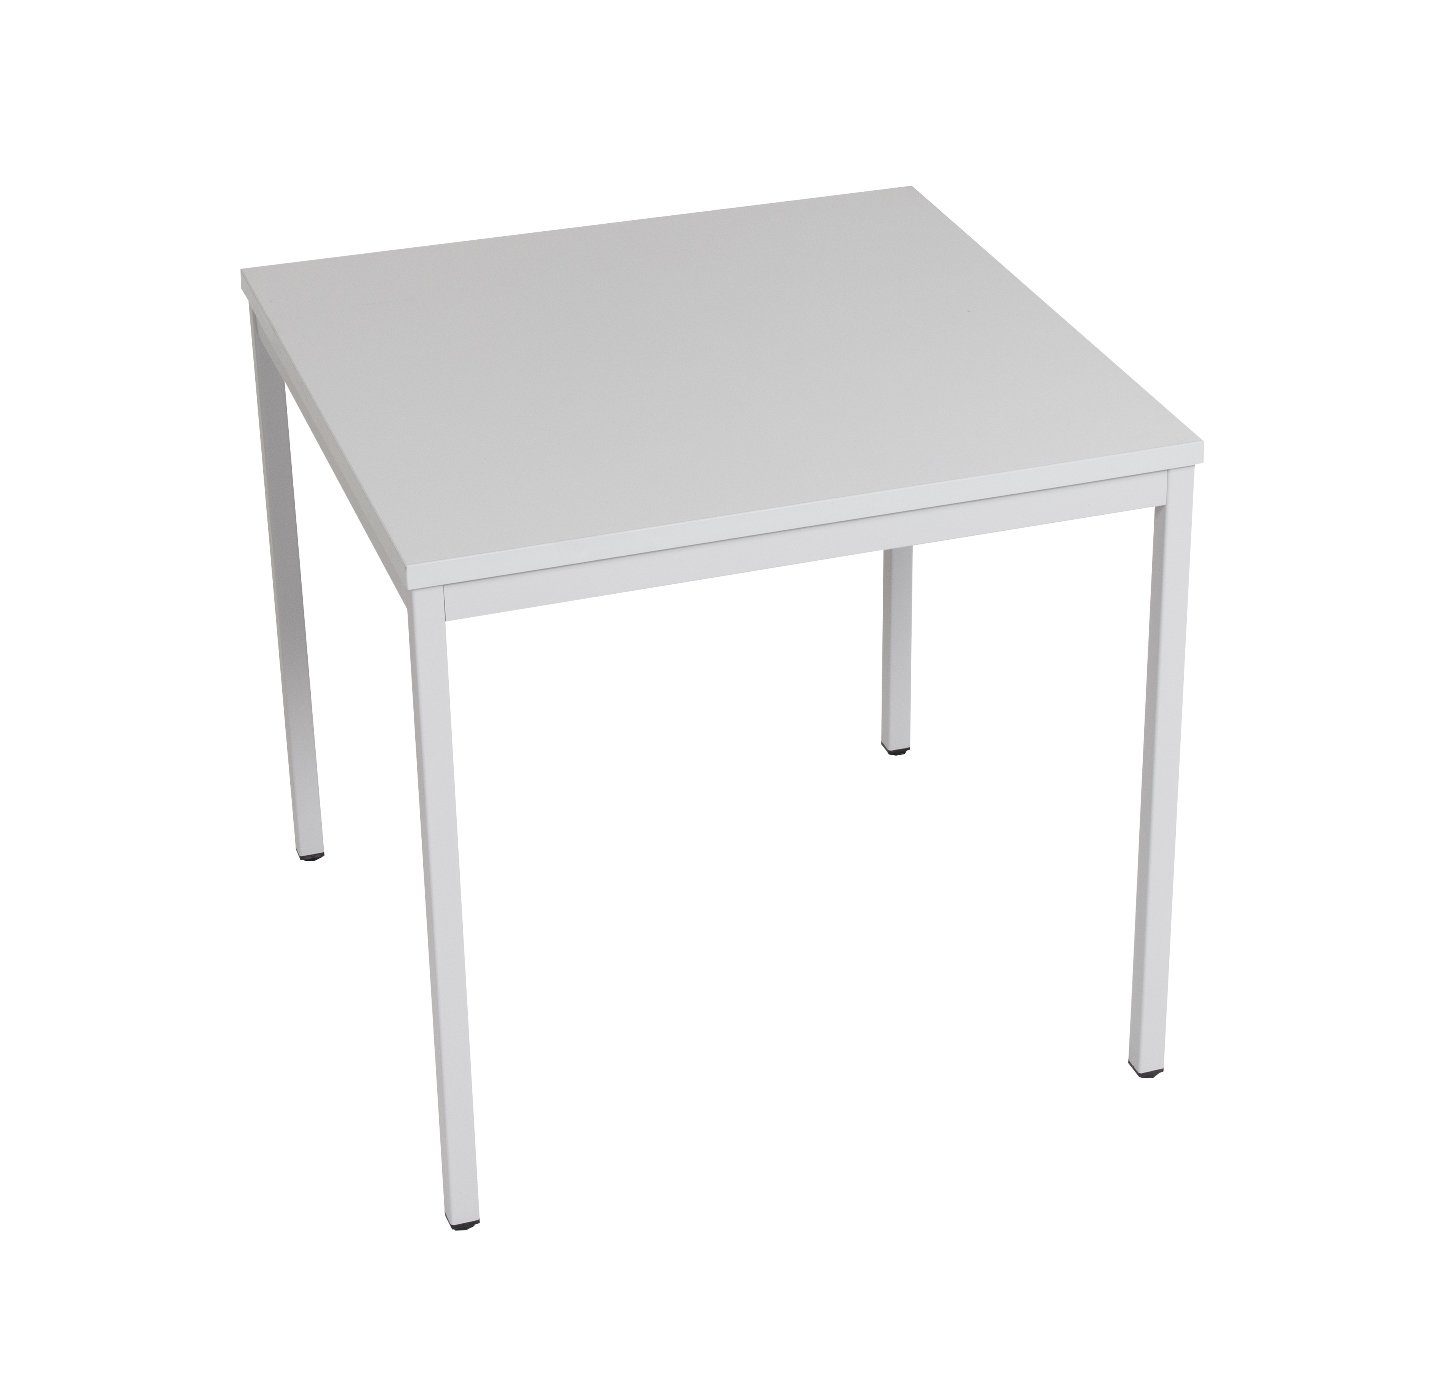 Furni24 Schreibtisch Mehrzwecktisch 80 x 80 cm grau, TÜV/GS geprüft - einfache Montage - sehr stabil